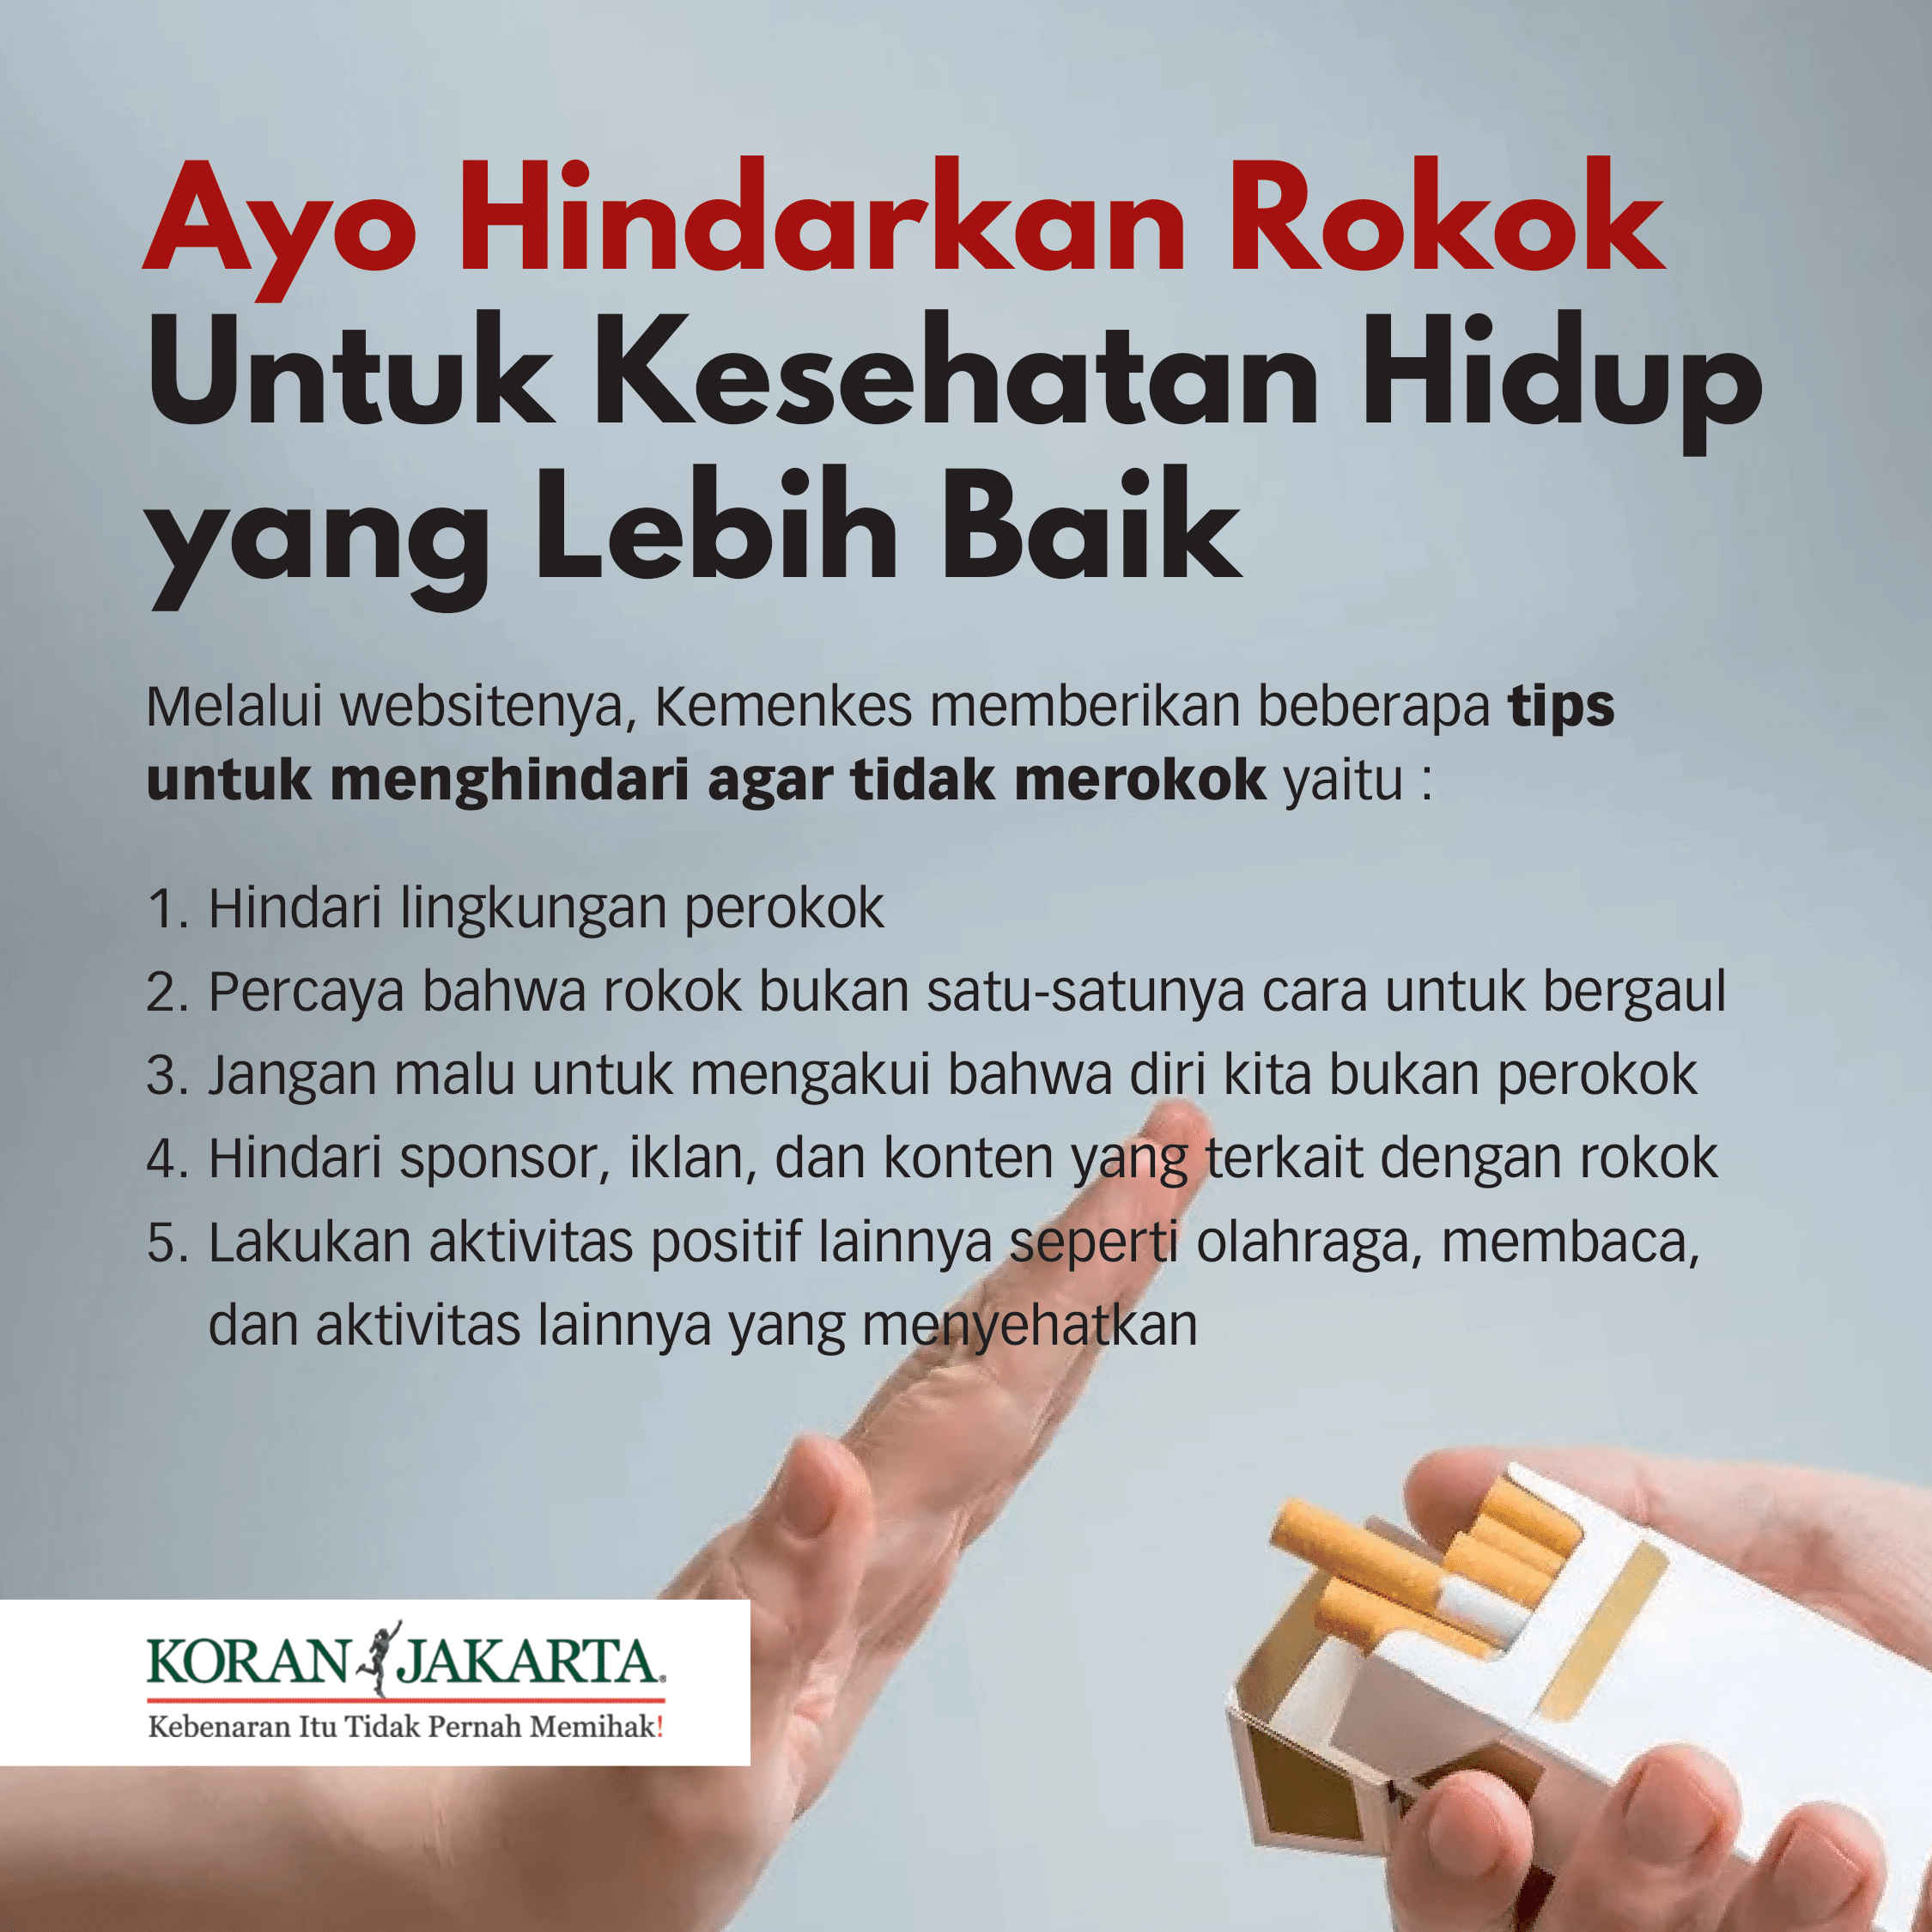 70 Juta Masyarakat Indonesia Merupakan Perokok Aktif, 7%nya Adalah Anak Muda! 6